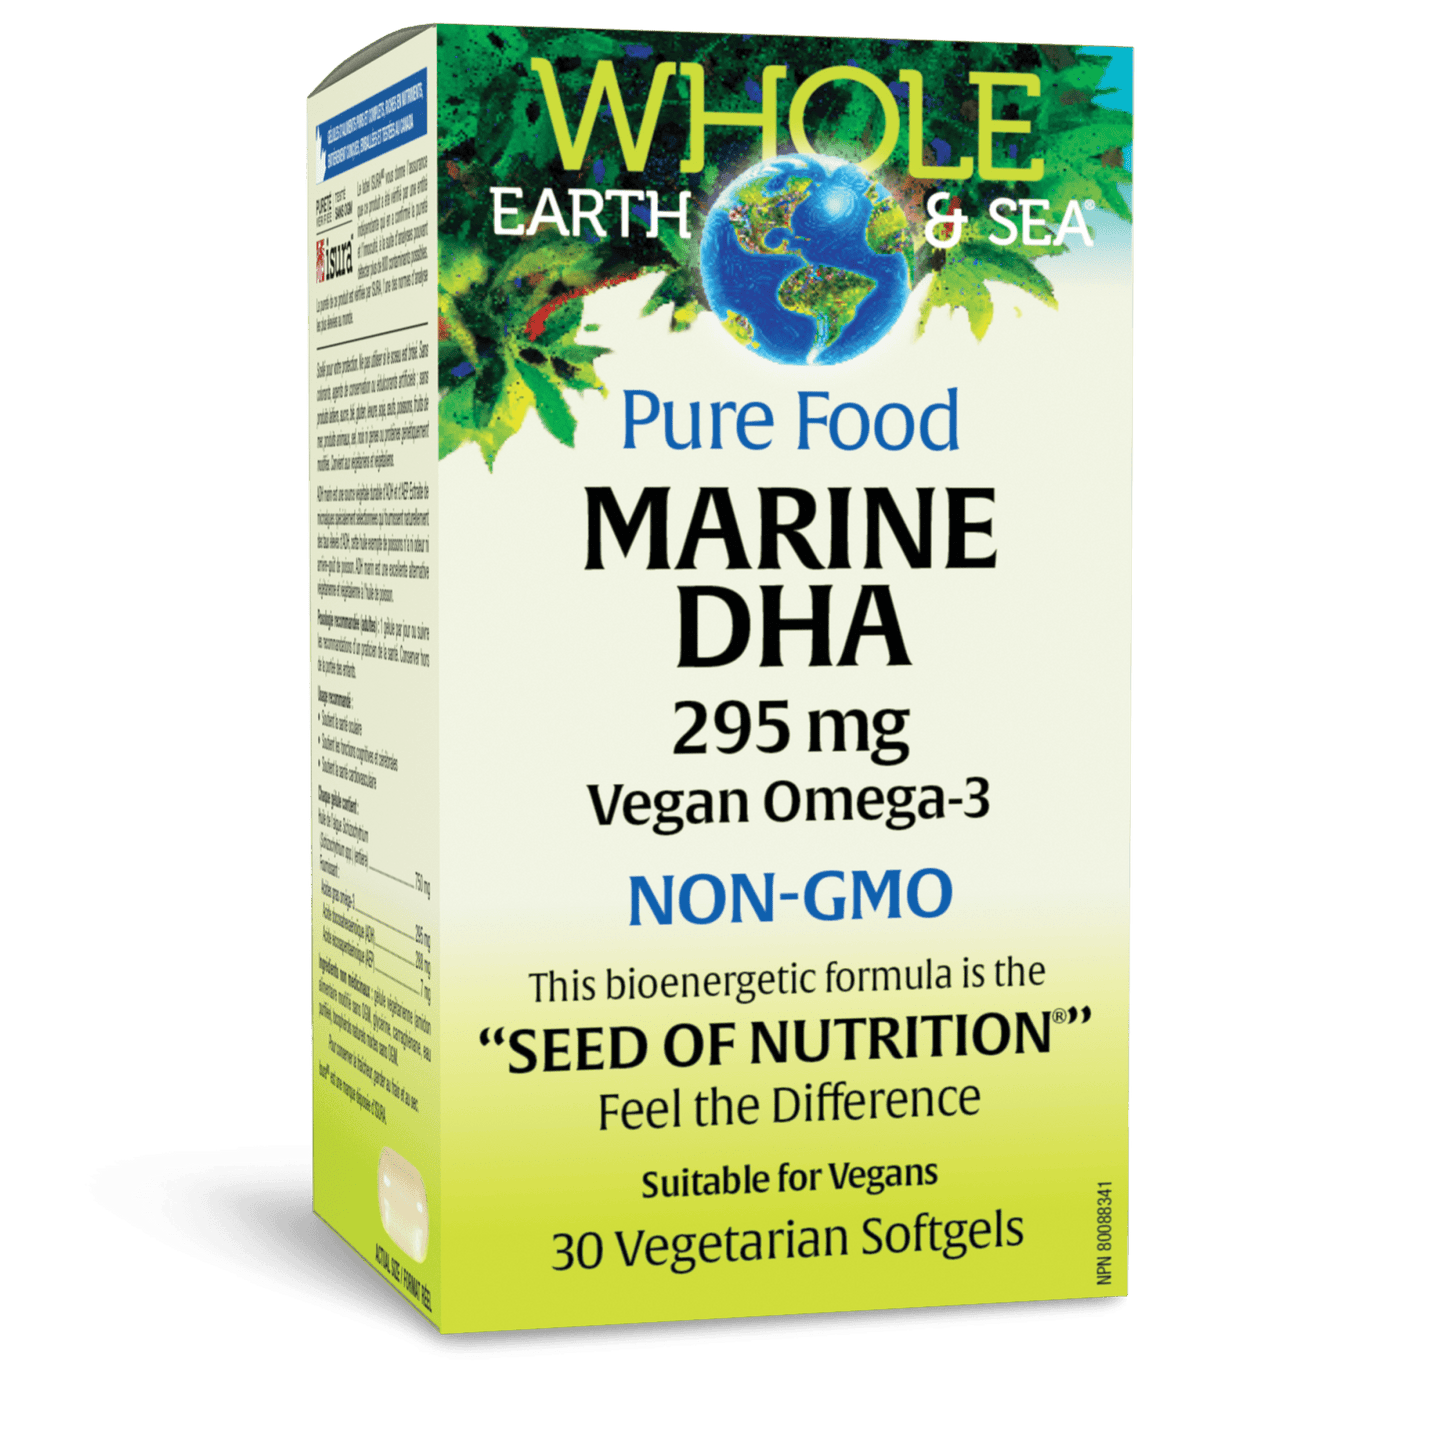 Marine DHA Vegan Omega-3, Whole Earth & Sea, Whole Earth & Sea®|v|image|35551